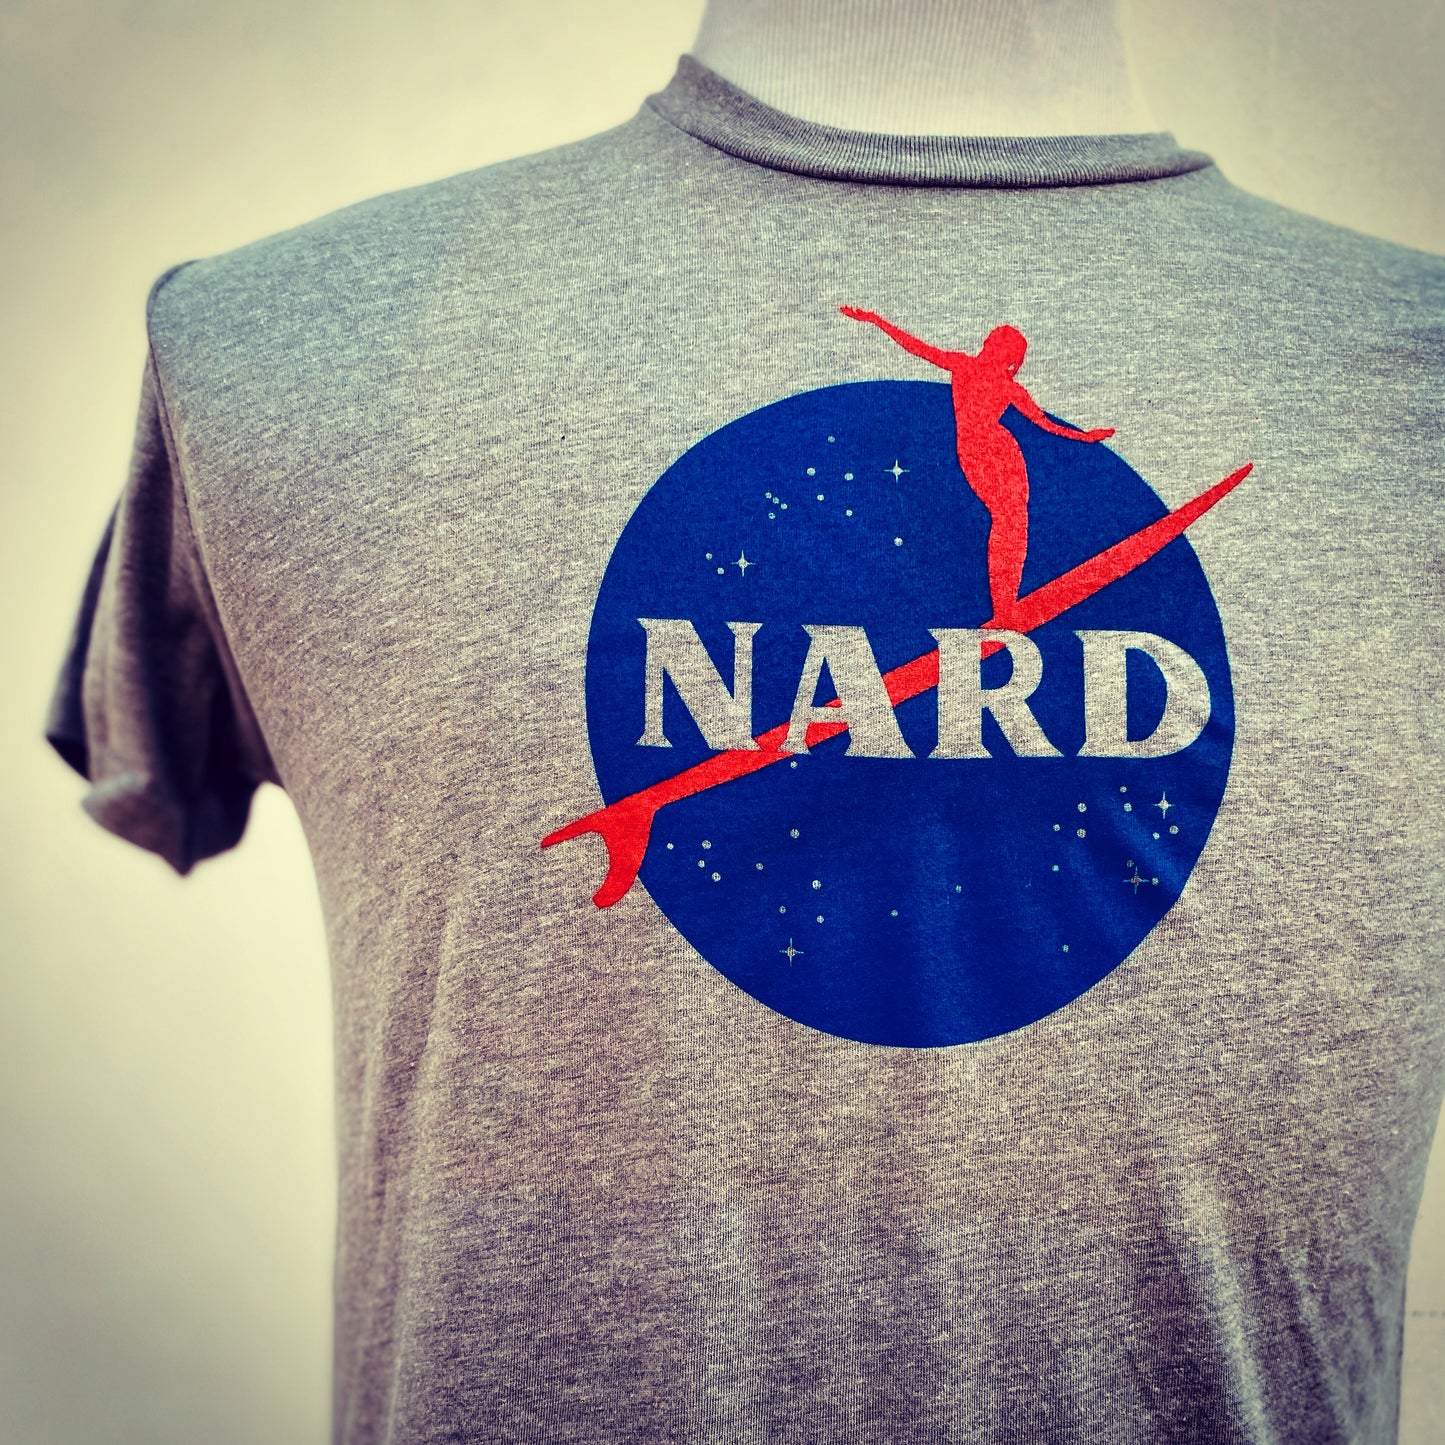 The Nard tshirt